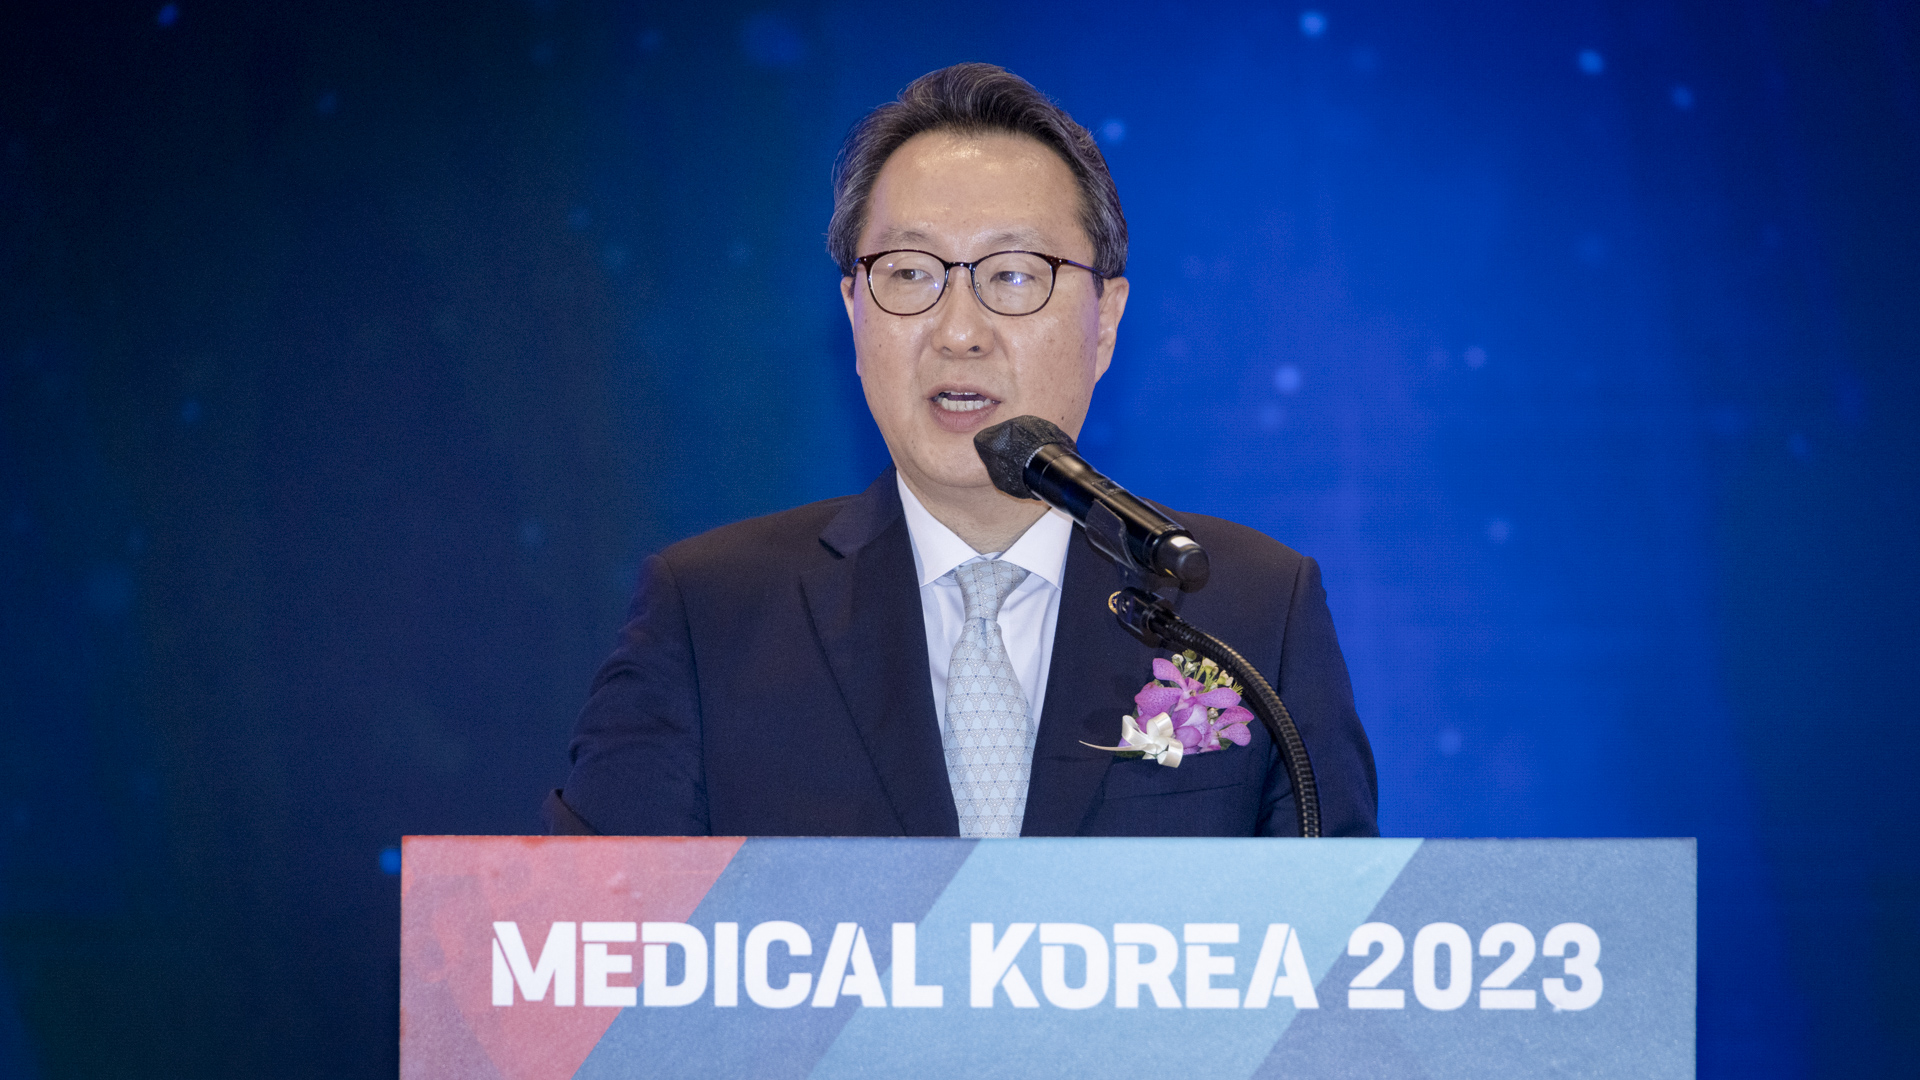 ‘더 나은 일상, 더 나은 미래를 위한 여정’ 「메디컬 코리아(Medical Korea) 2023」 사진13